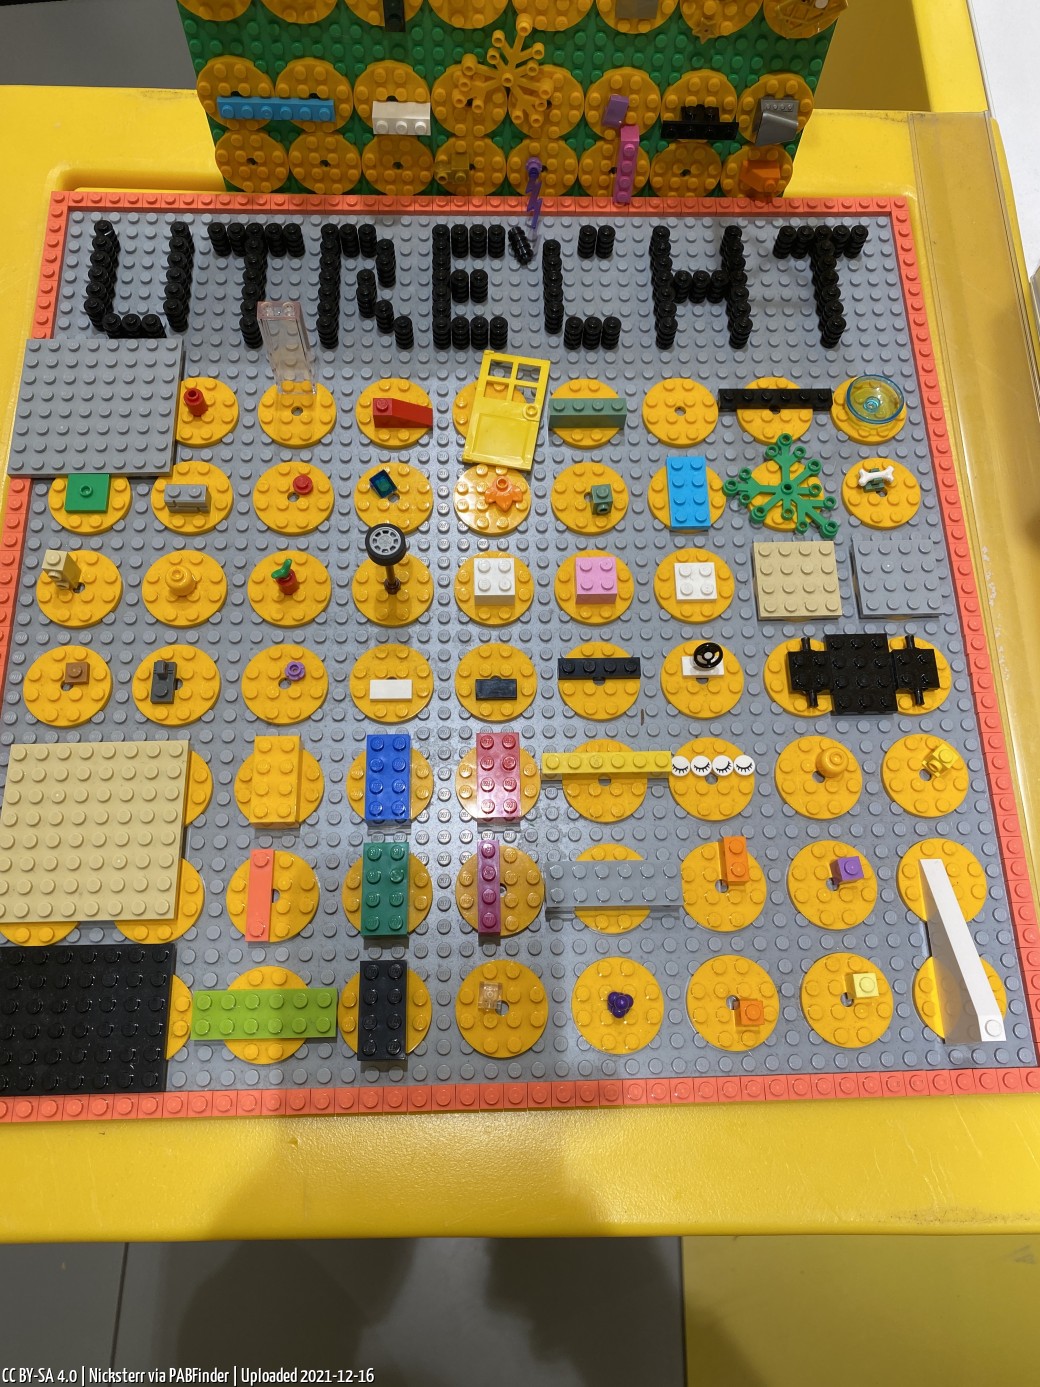 Pick a Brick Utrecht (Nicksterr, 12/16/21, 1:29:43 PM)